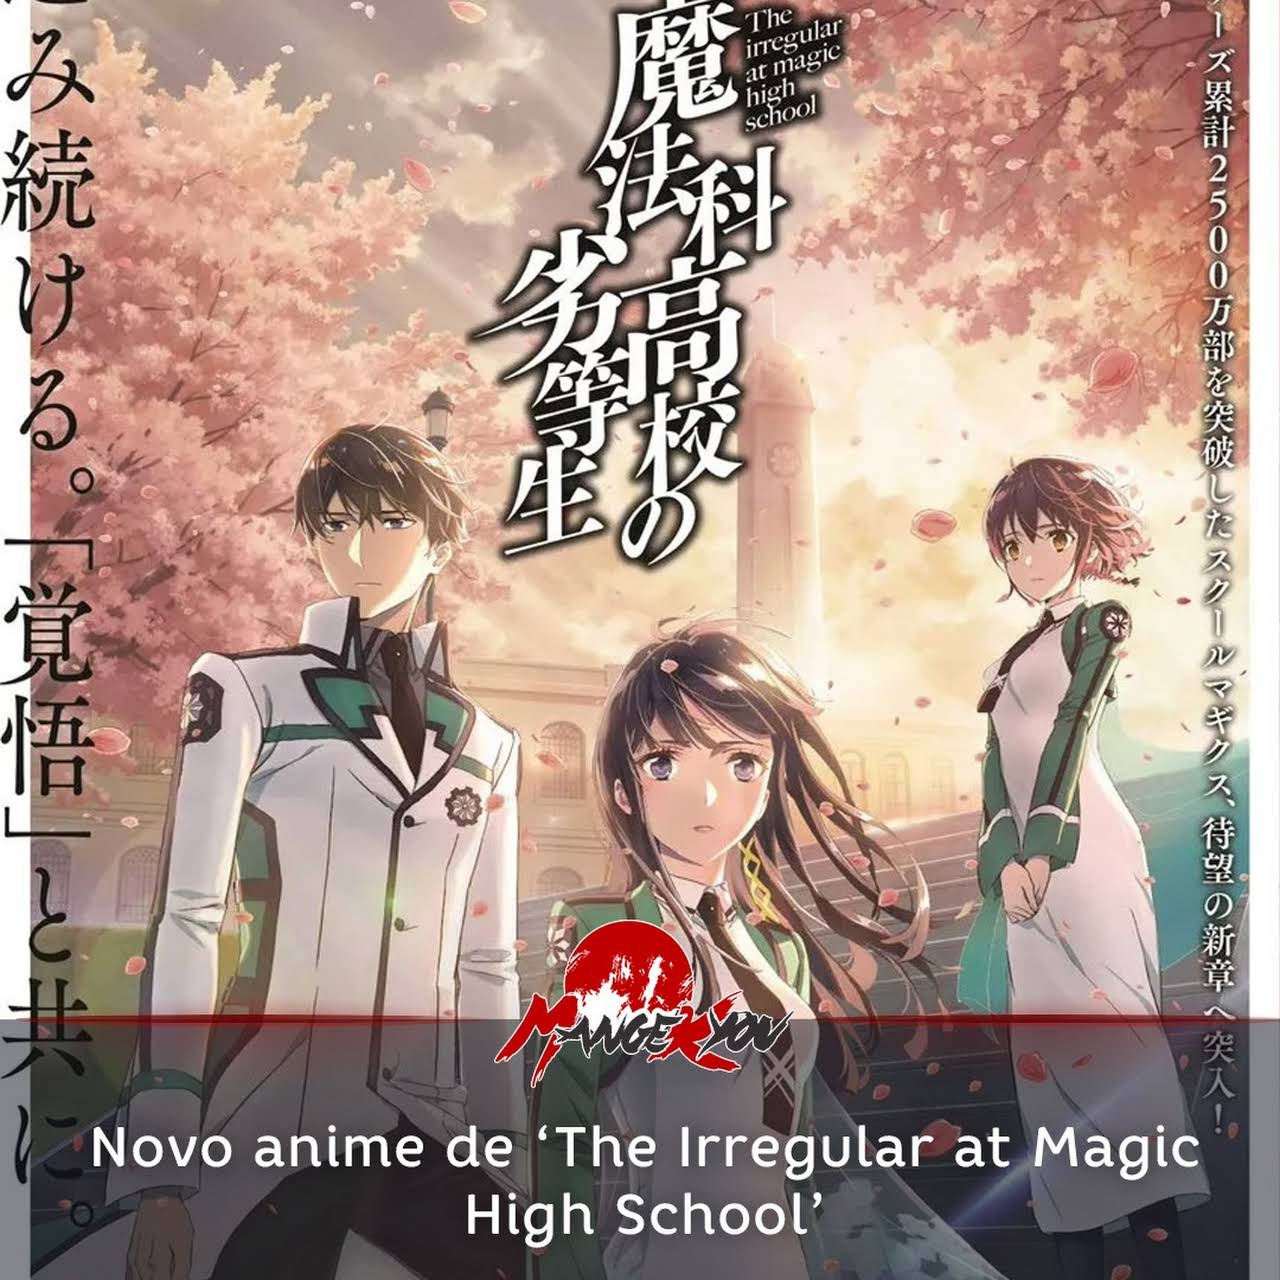 Mangekyou Store - O site oficial da segunda temporada do anime